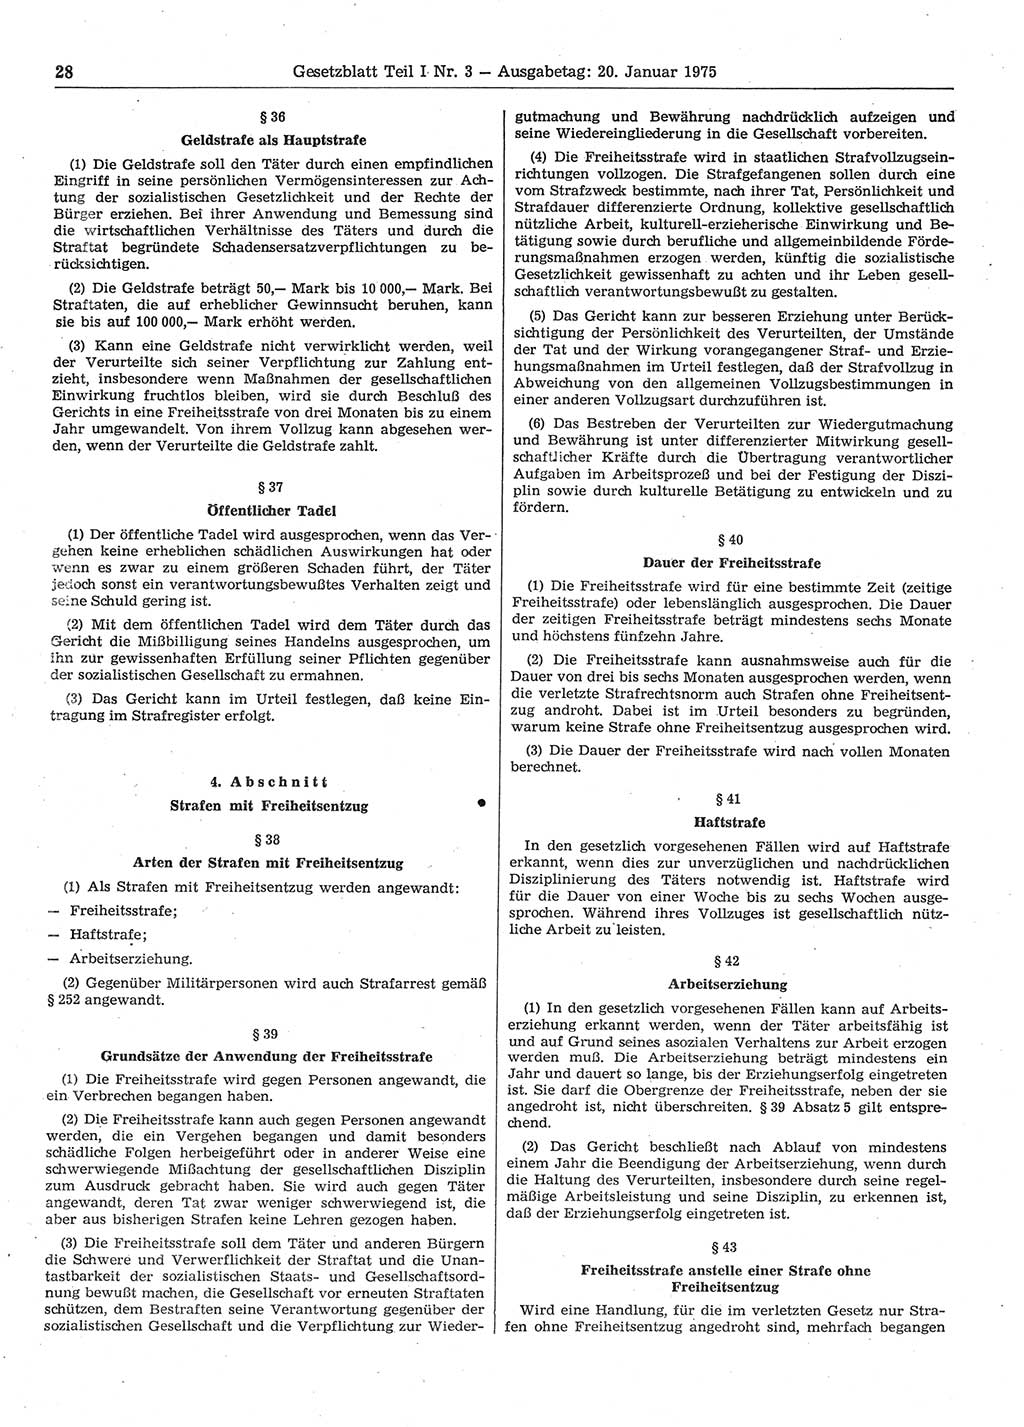 Gesetzblatt (GBl.) der Deutschen Demokratischen Republik (DDR) Teil Ⅰ 1975, Seite 28 (GBl. DDR Ⅰ 1975, S. 28)